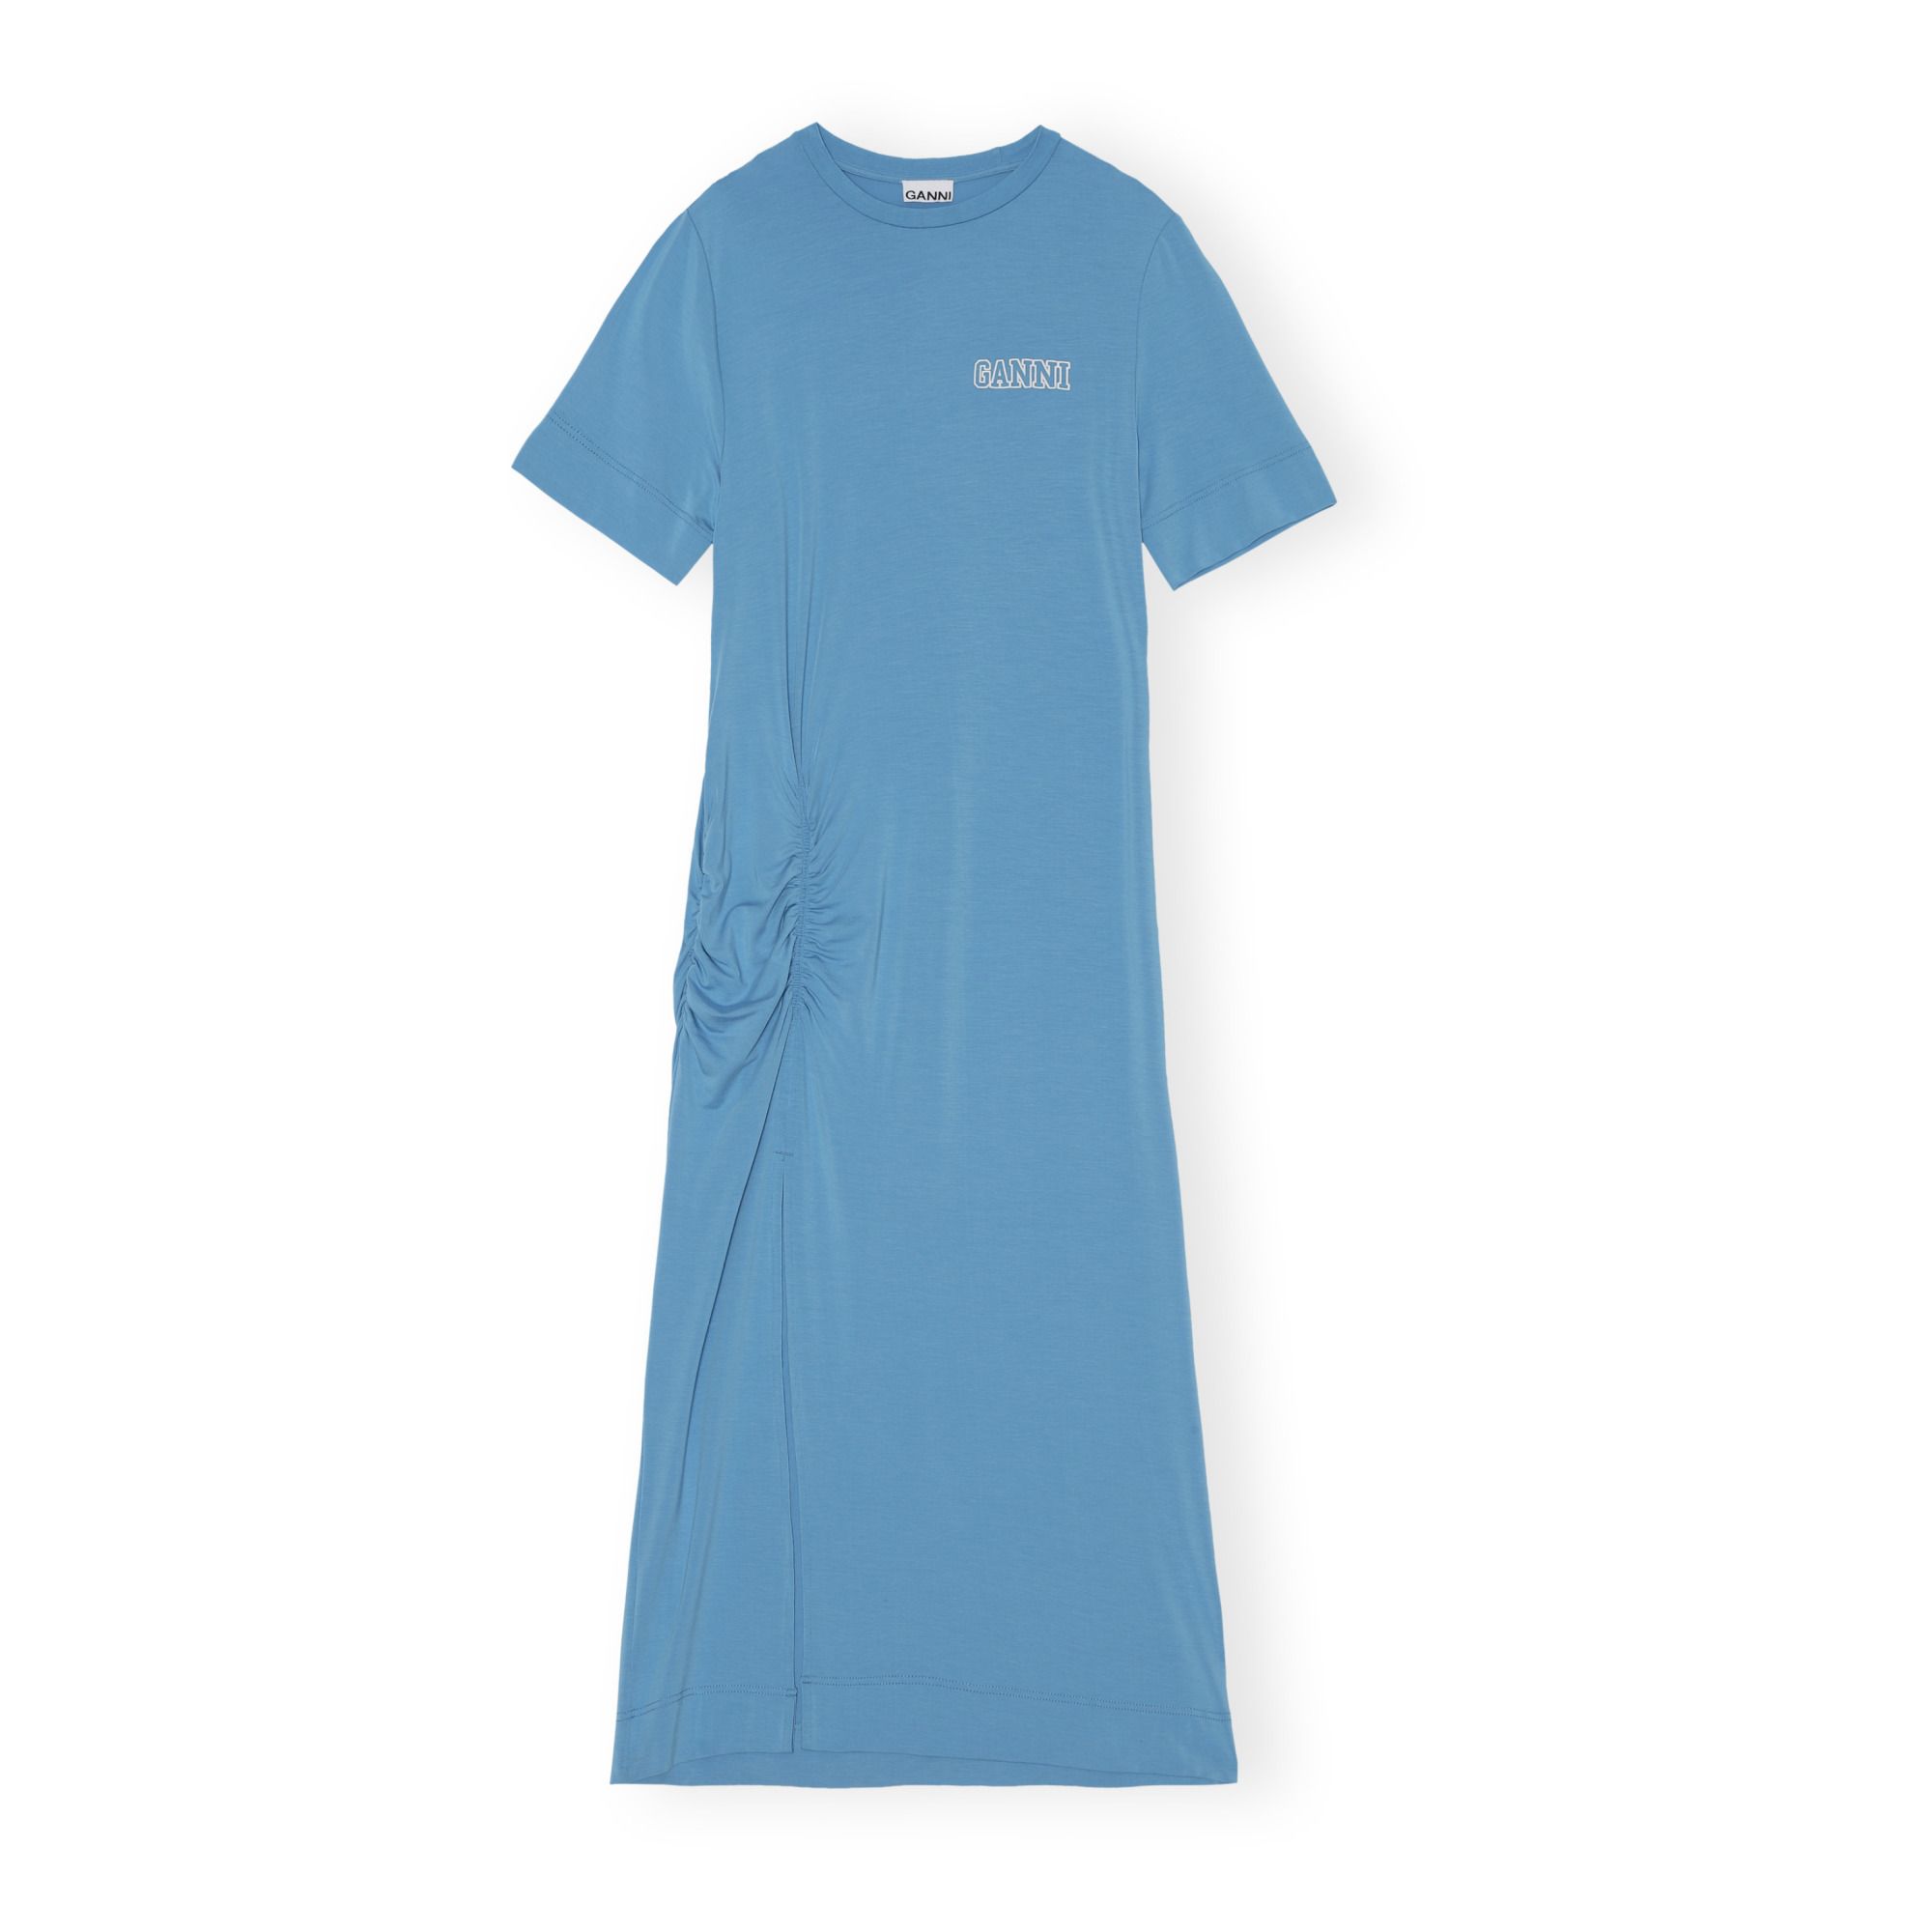 Ganni - Robe Software Fendue Jersey Stretch - Femme - Bleu azur